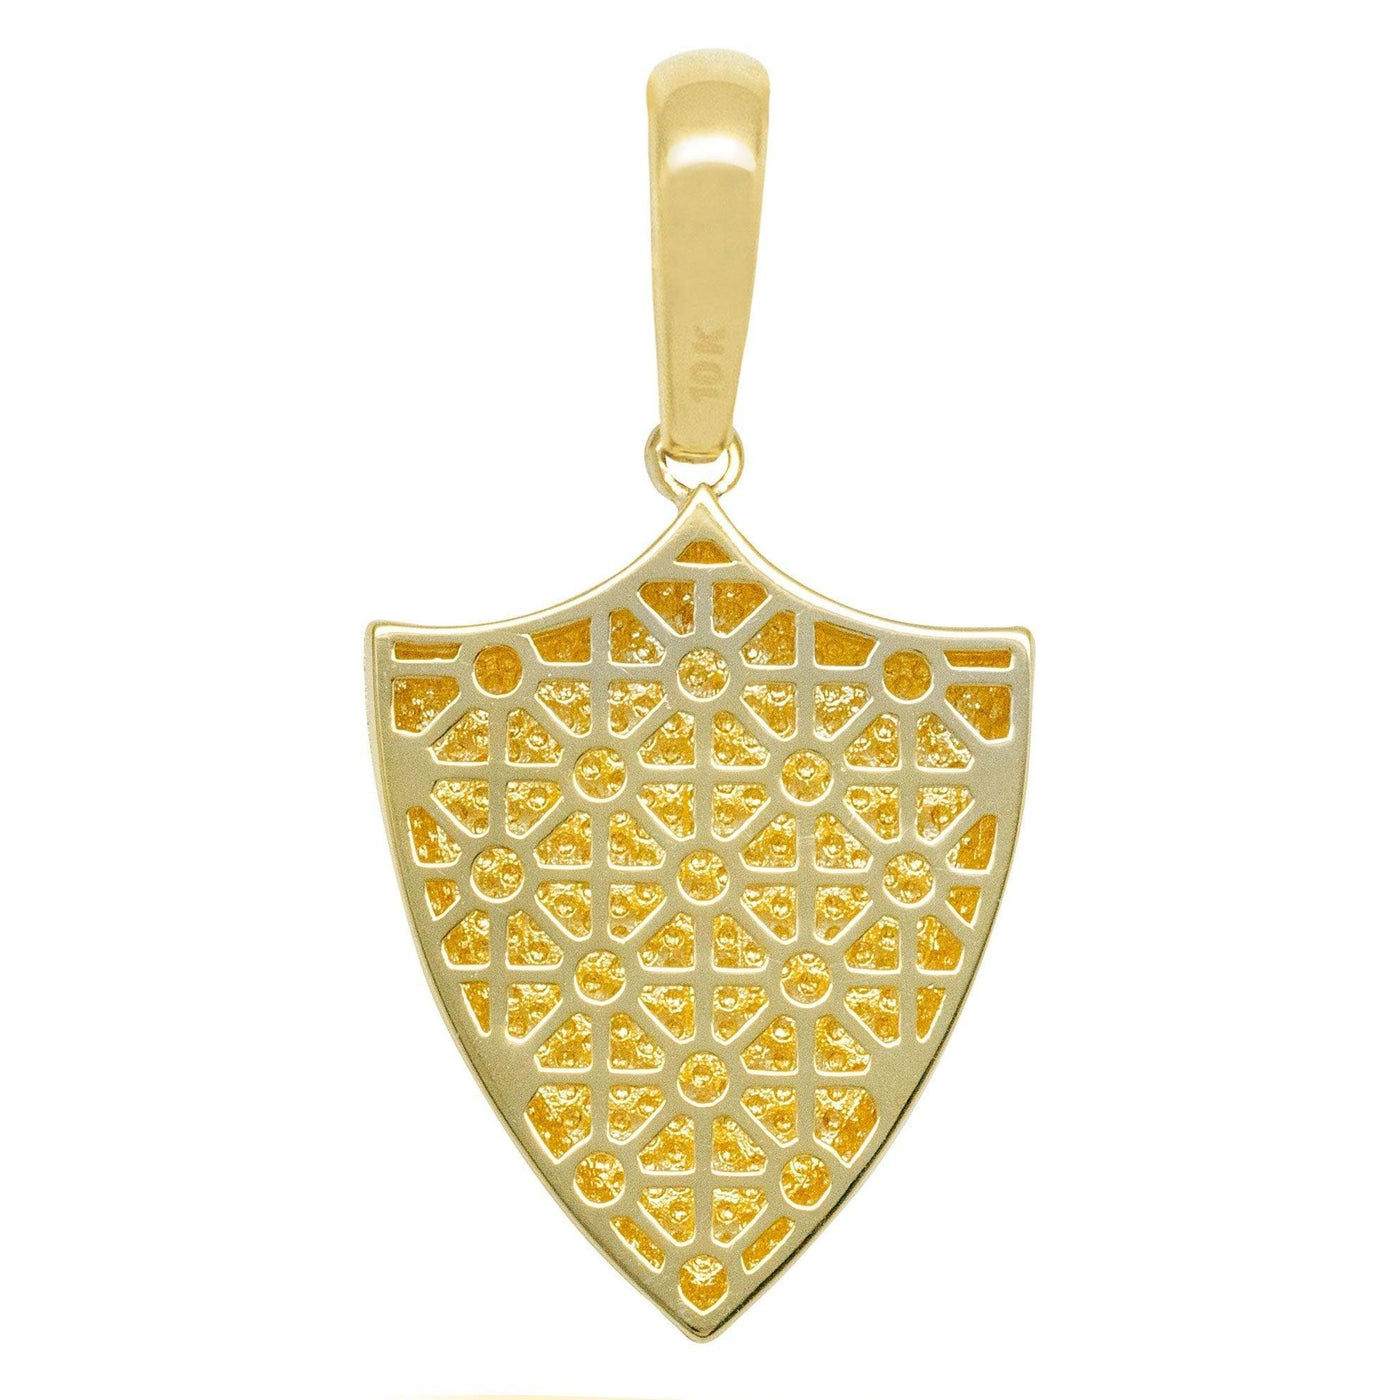 1 3/4" Plain Shield Pendant Solid 10K Yellow Gold - bayamjewelry